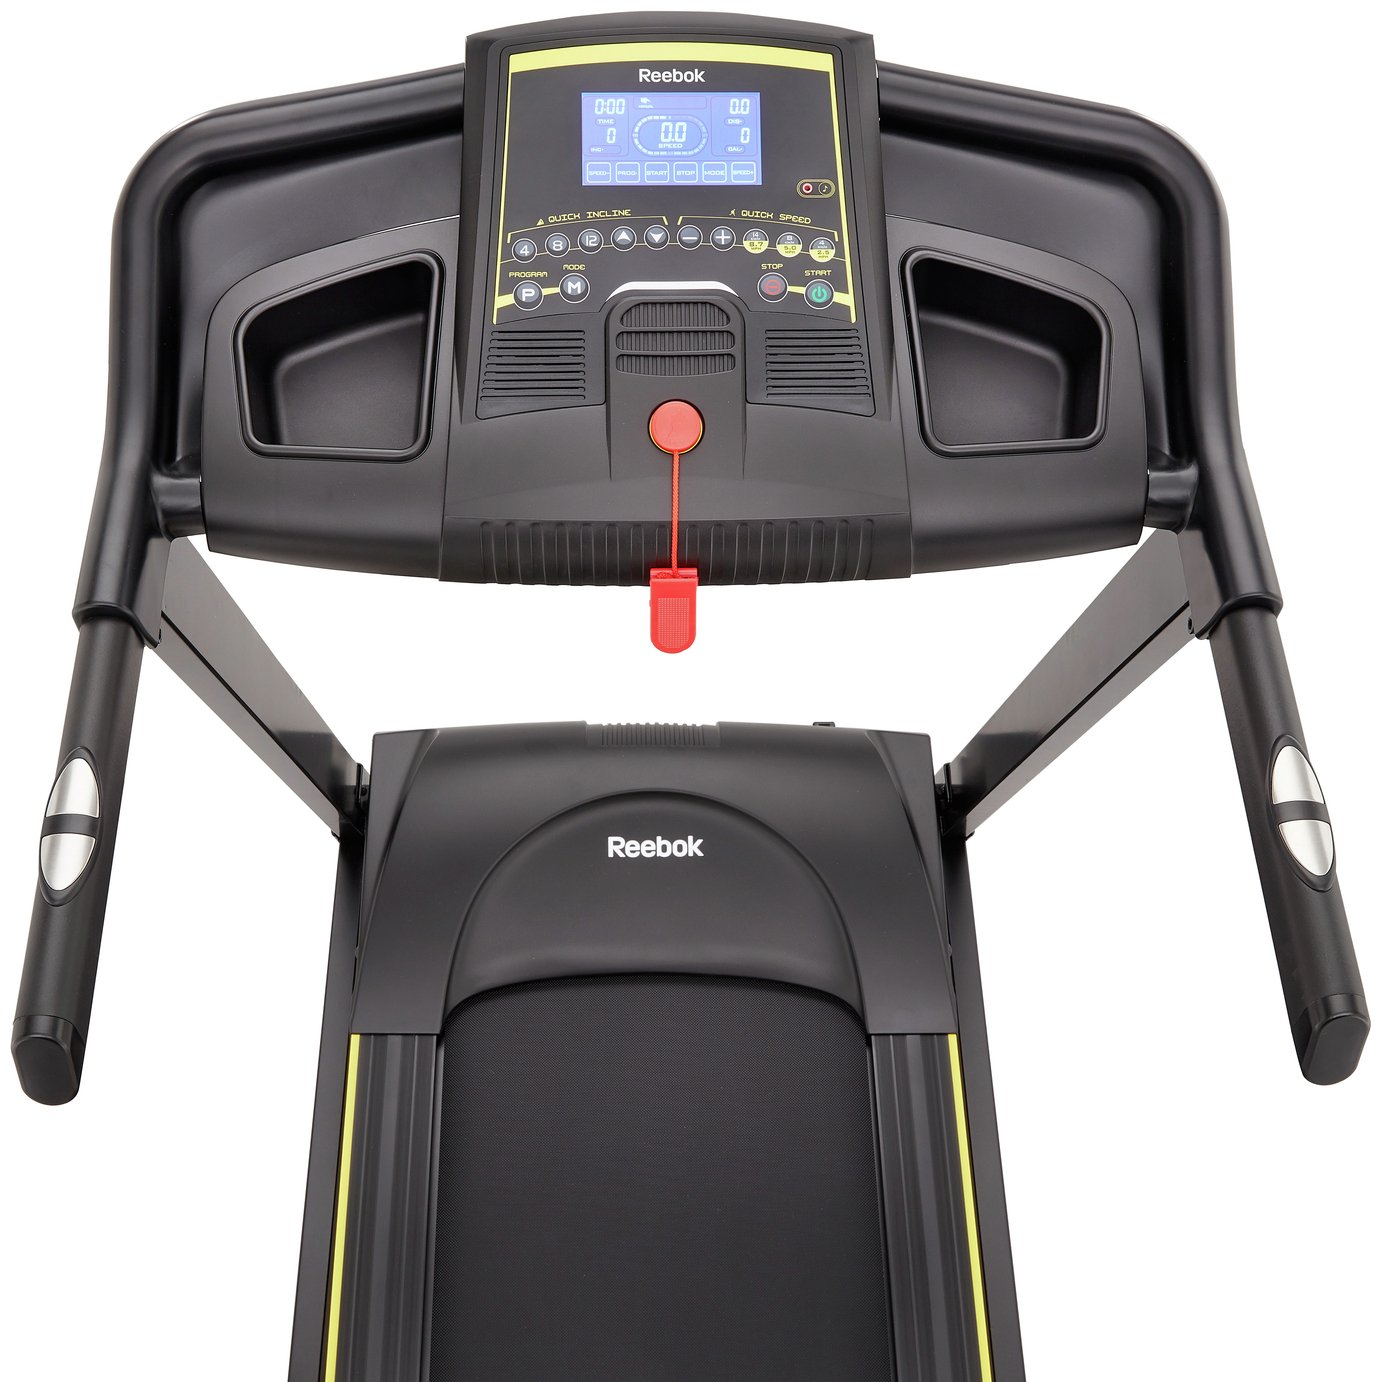 gt30 treadmill